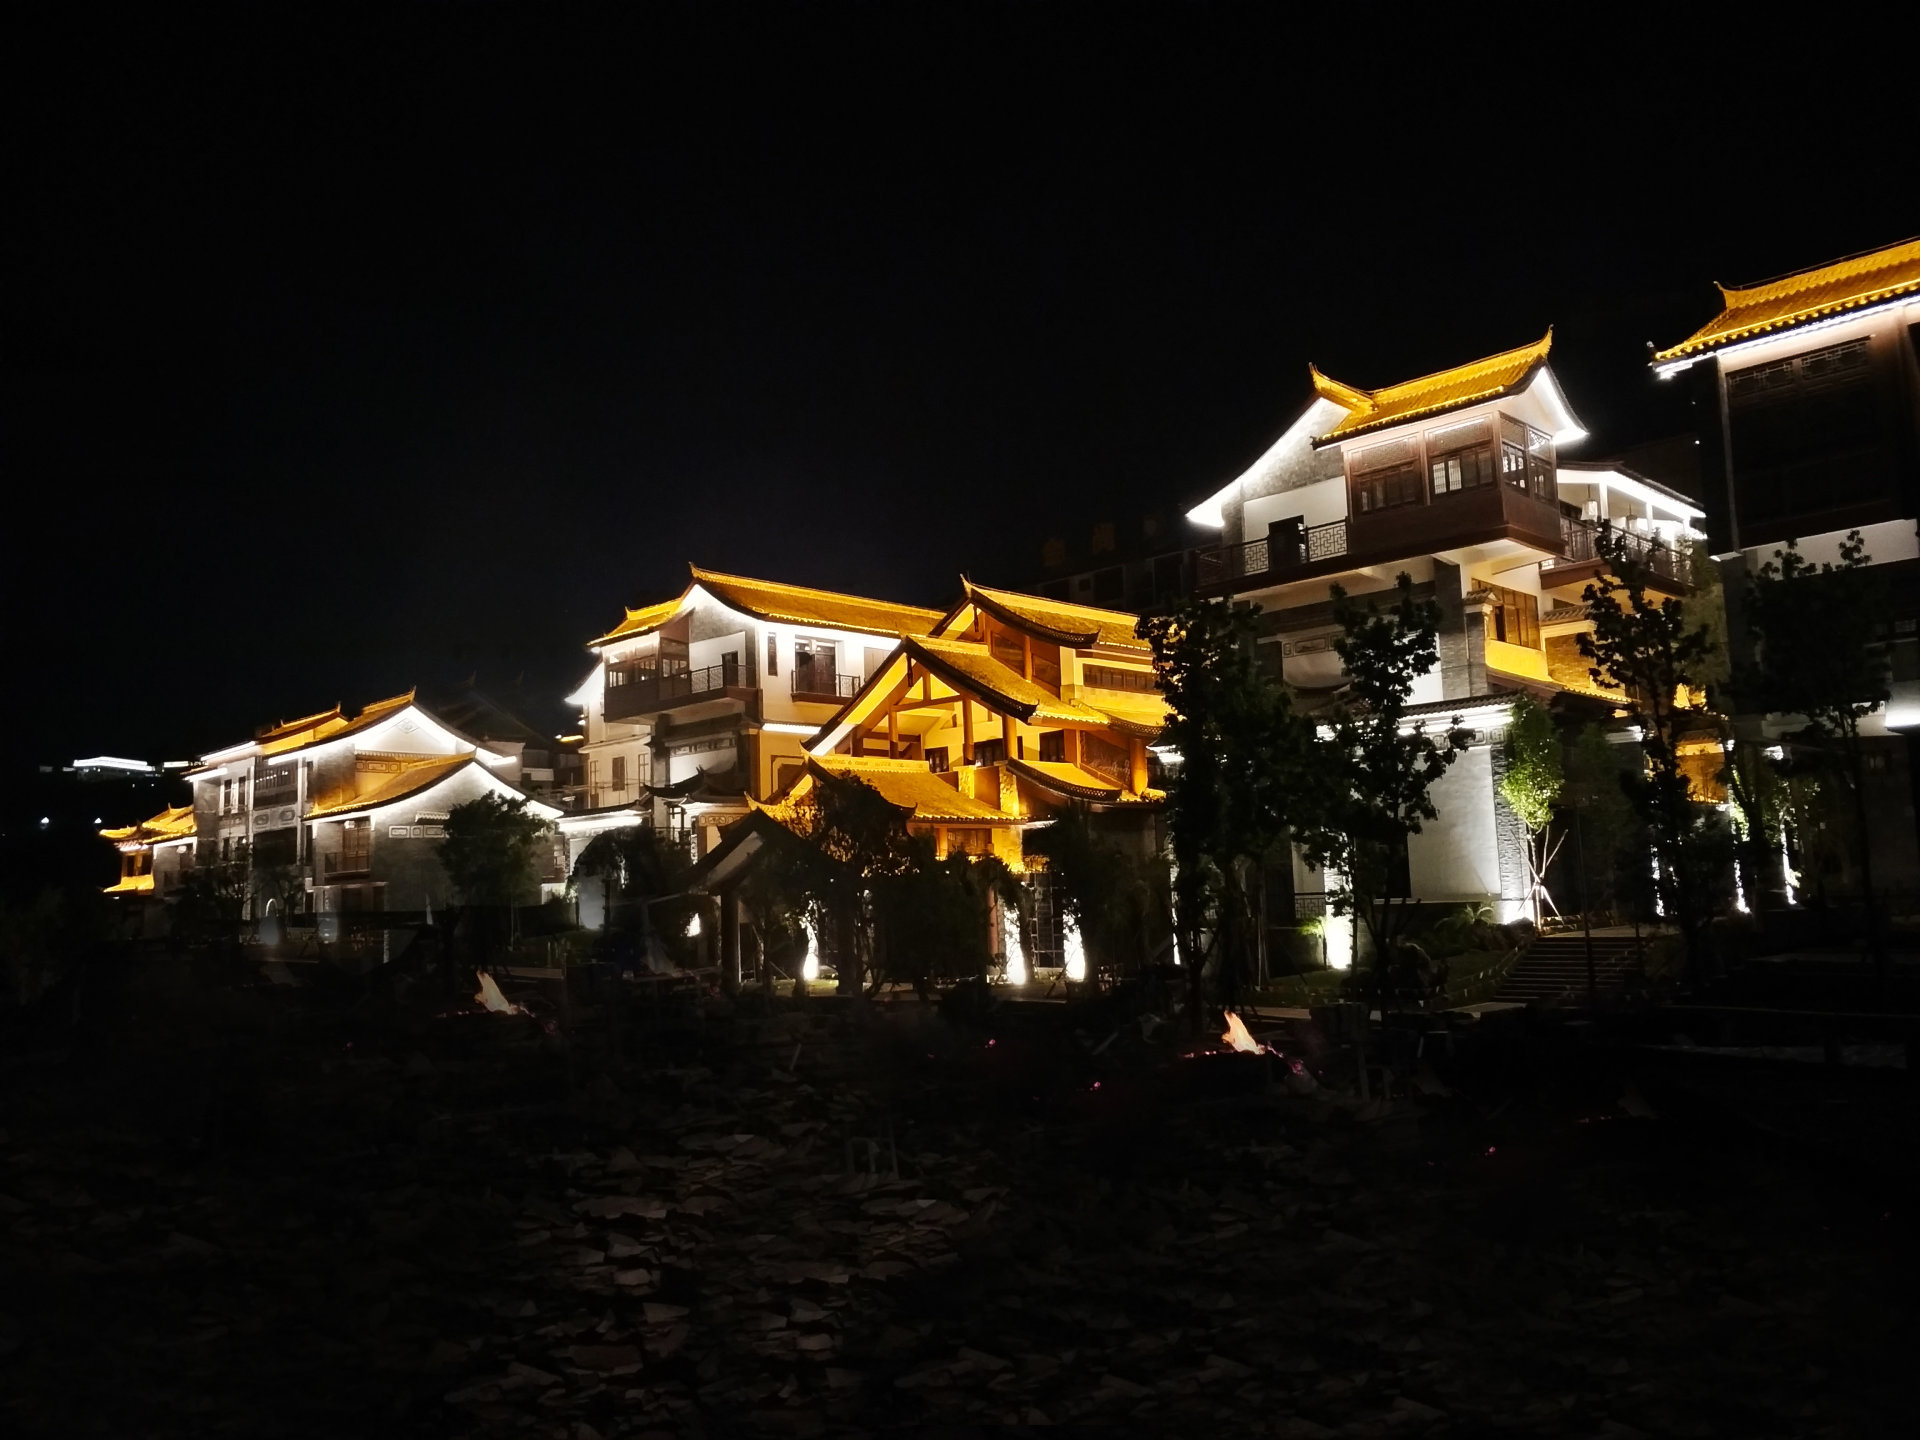 Yinhuangzhuang, Dali, Yunnan